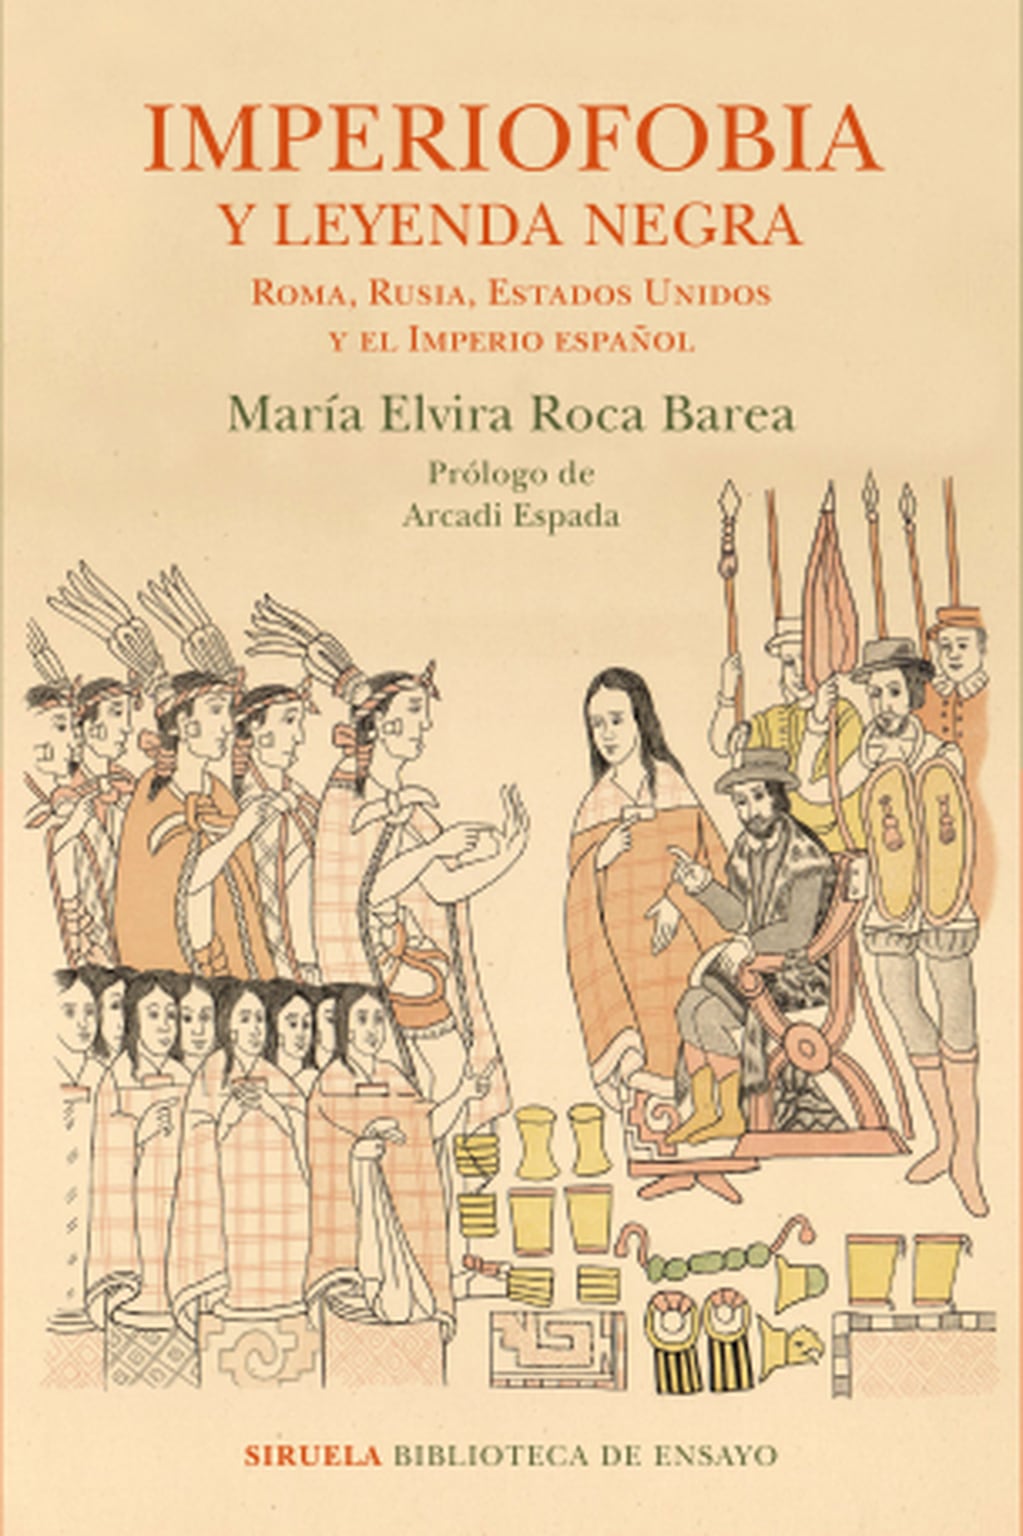 Imperiofobia y leyenda negra, de María Elvira Roca Barea.